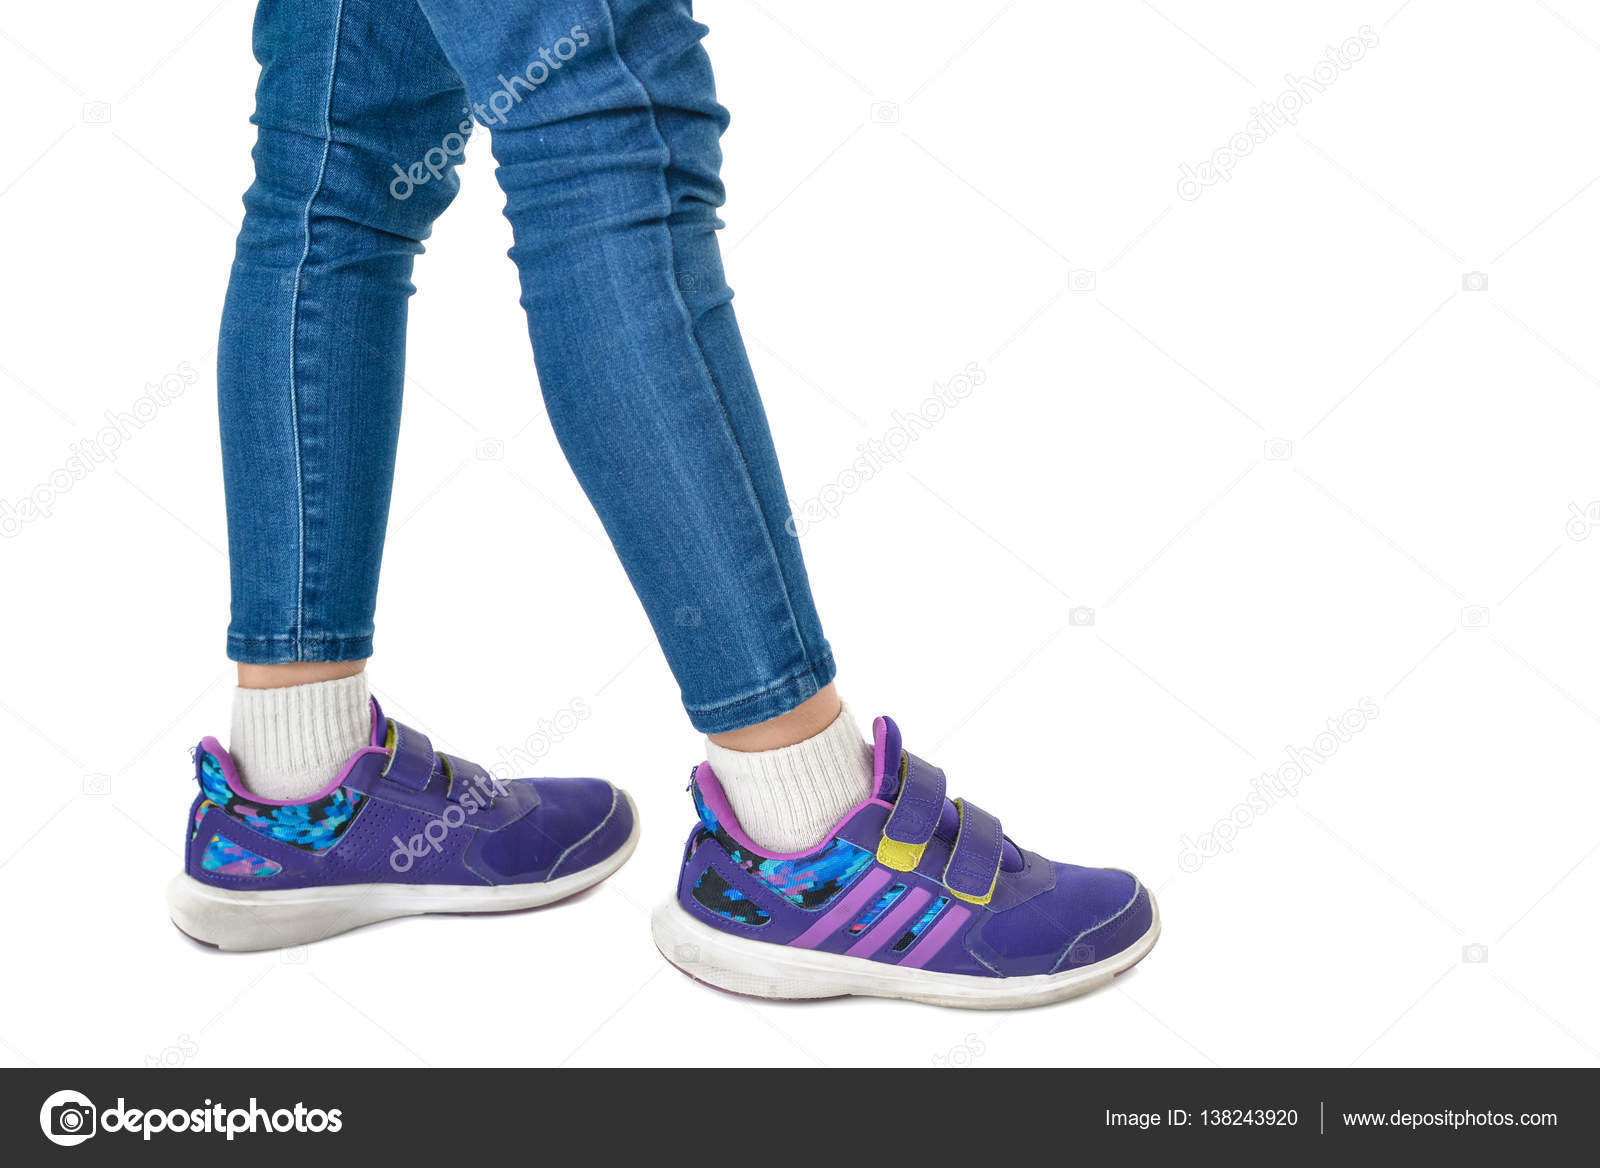 girls wearing shoes